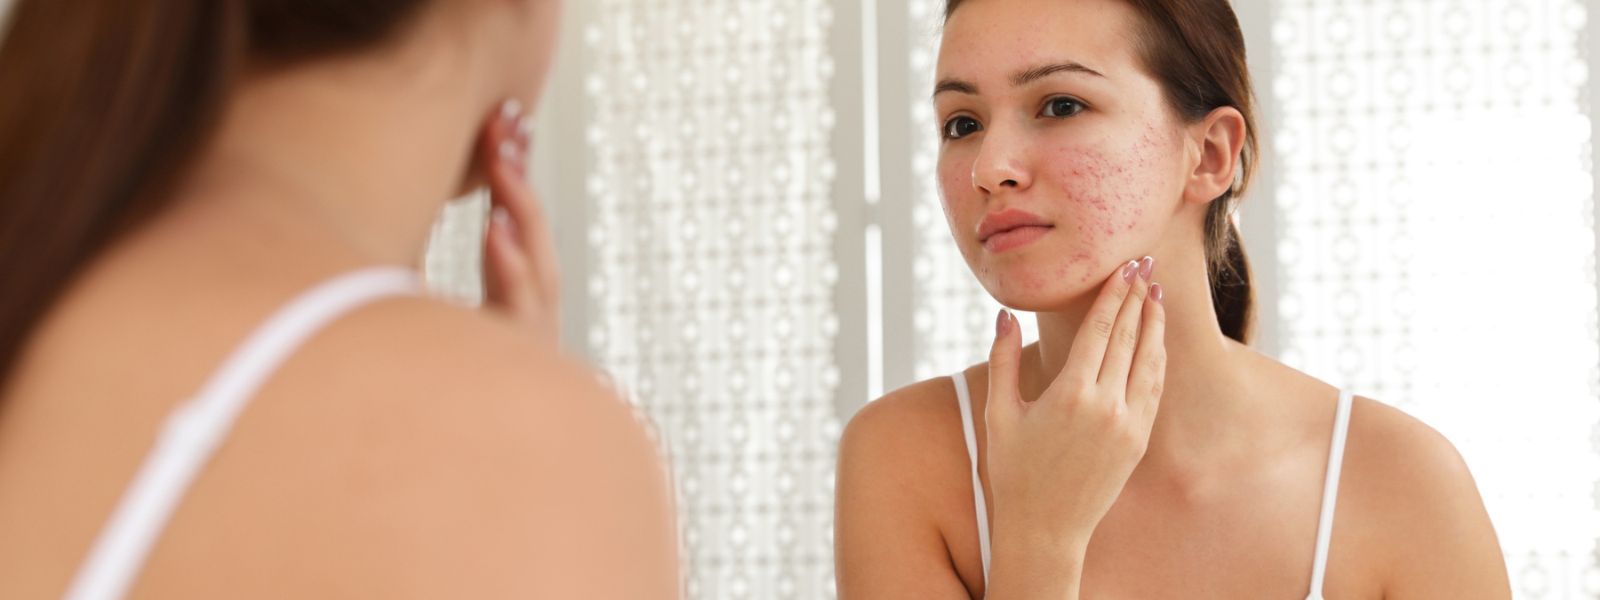 Girl checking the facial scars through mirror.